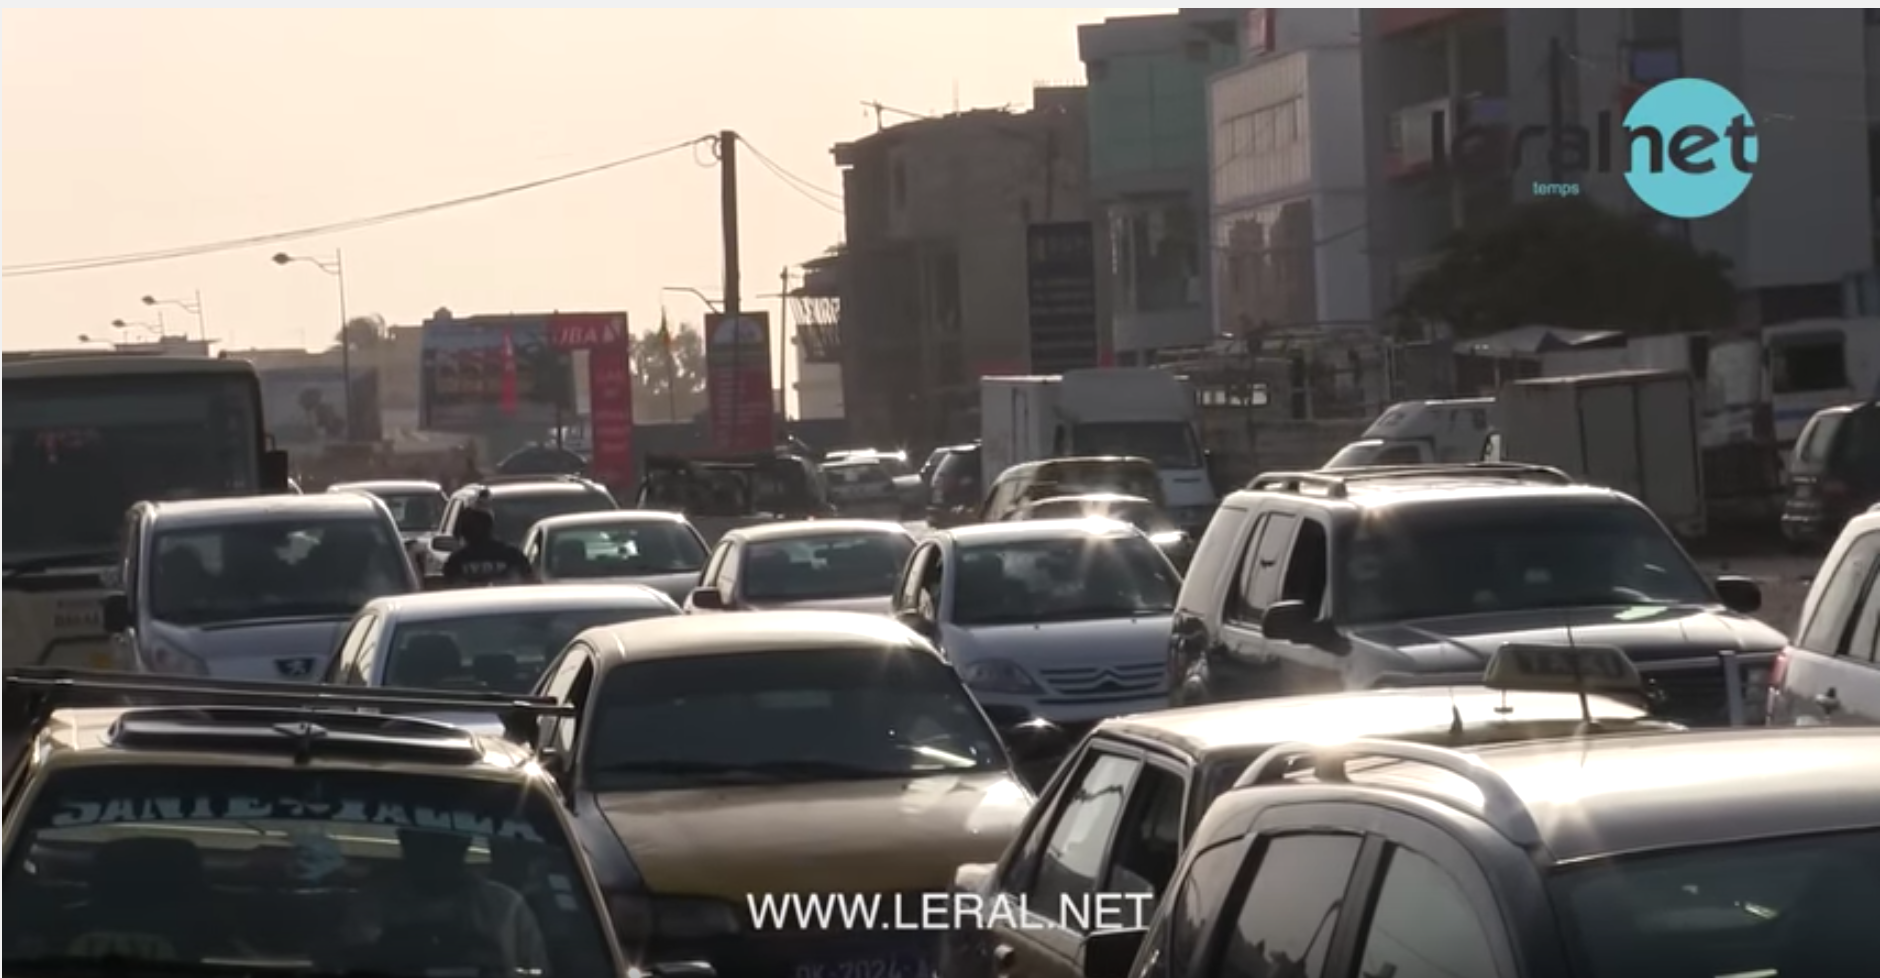 Embouteillages monstres sur la Vdn-Mermoz, le plan de circulation suspendu selon Serigne Babacar Kane, préfet de Dakar